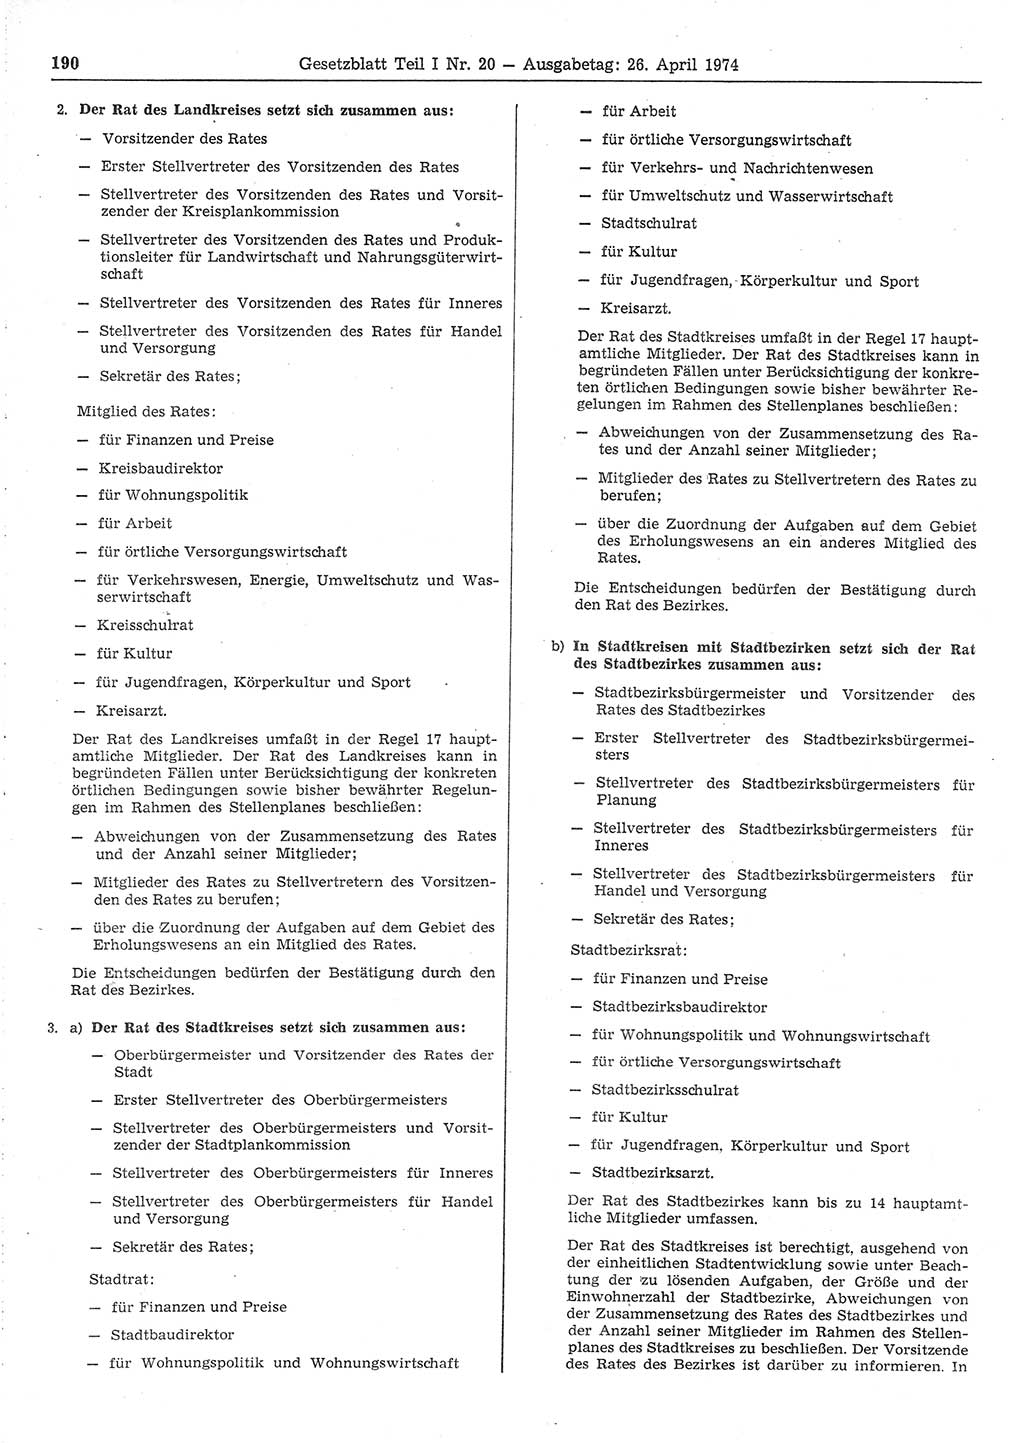 Gesetzblatt (GBl.) der Deutschen Demokratischen Republik (DDR) Teil Ⅰ 1974, Seite 190 (GBl. DDR Ⅰ 1974, S. 190)